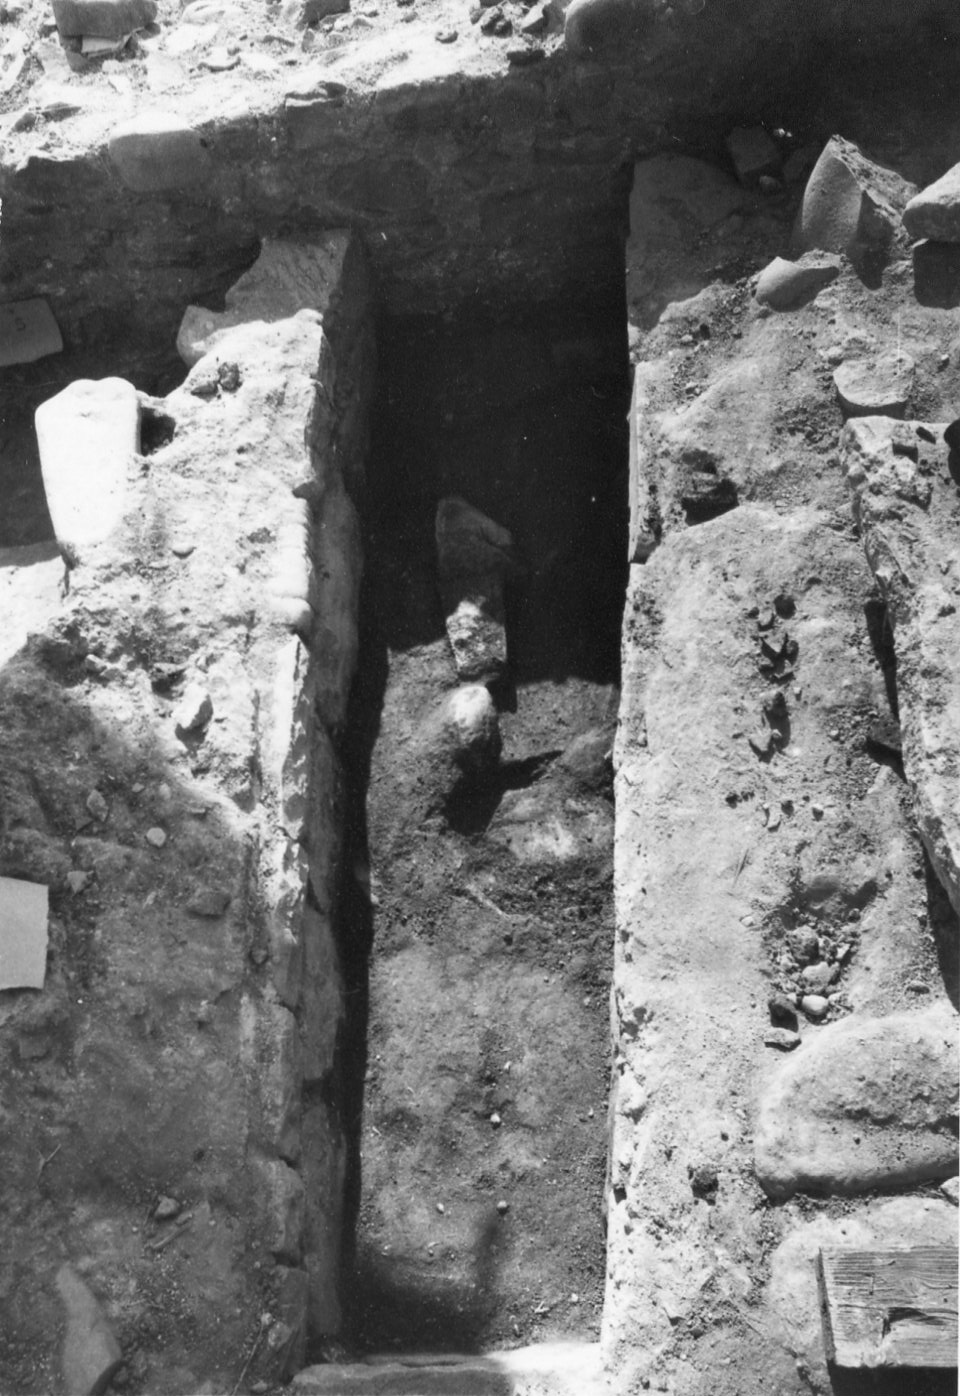 Basilica paleocristiana di CAPO DON, Tomba 1 (tomba a cassone, strutture per il culto) - Riva Ligure (IM)  (VI)